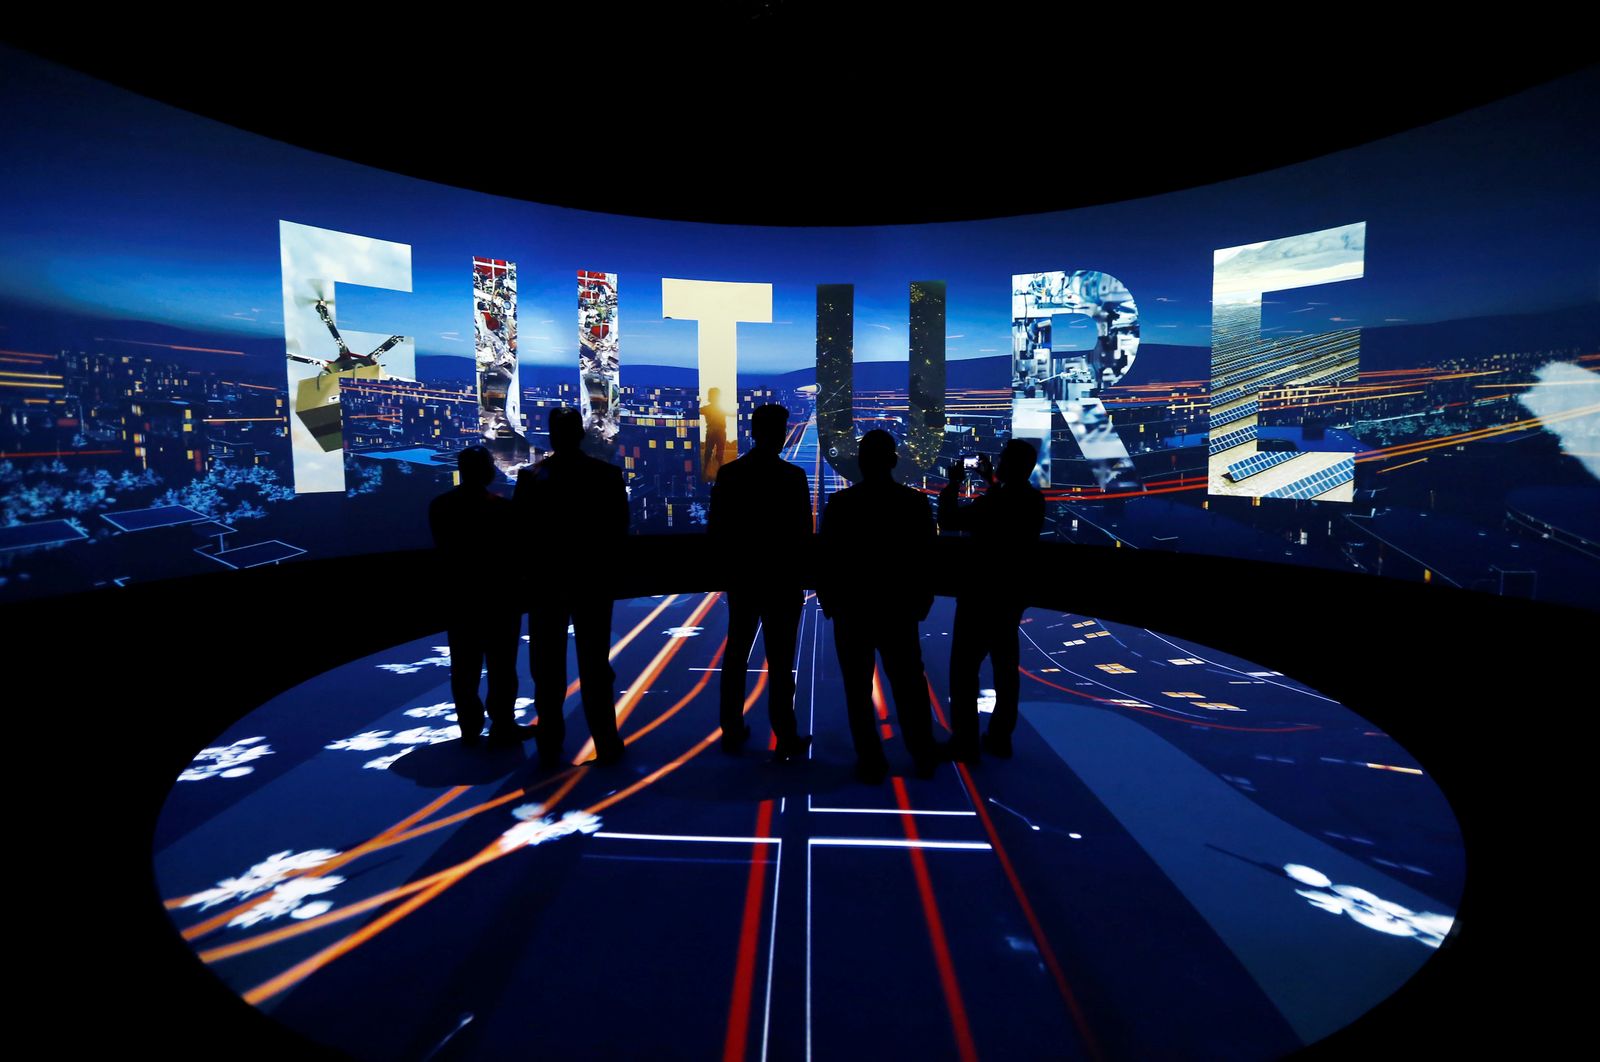  زوار  يشاهدون عرضاً بتقنية 3D حول آفاق مشروع نيوم - REUTERS